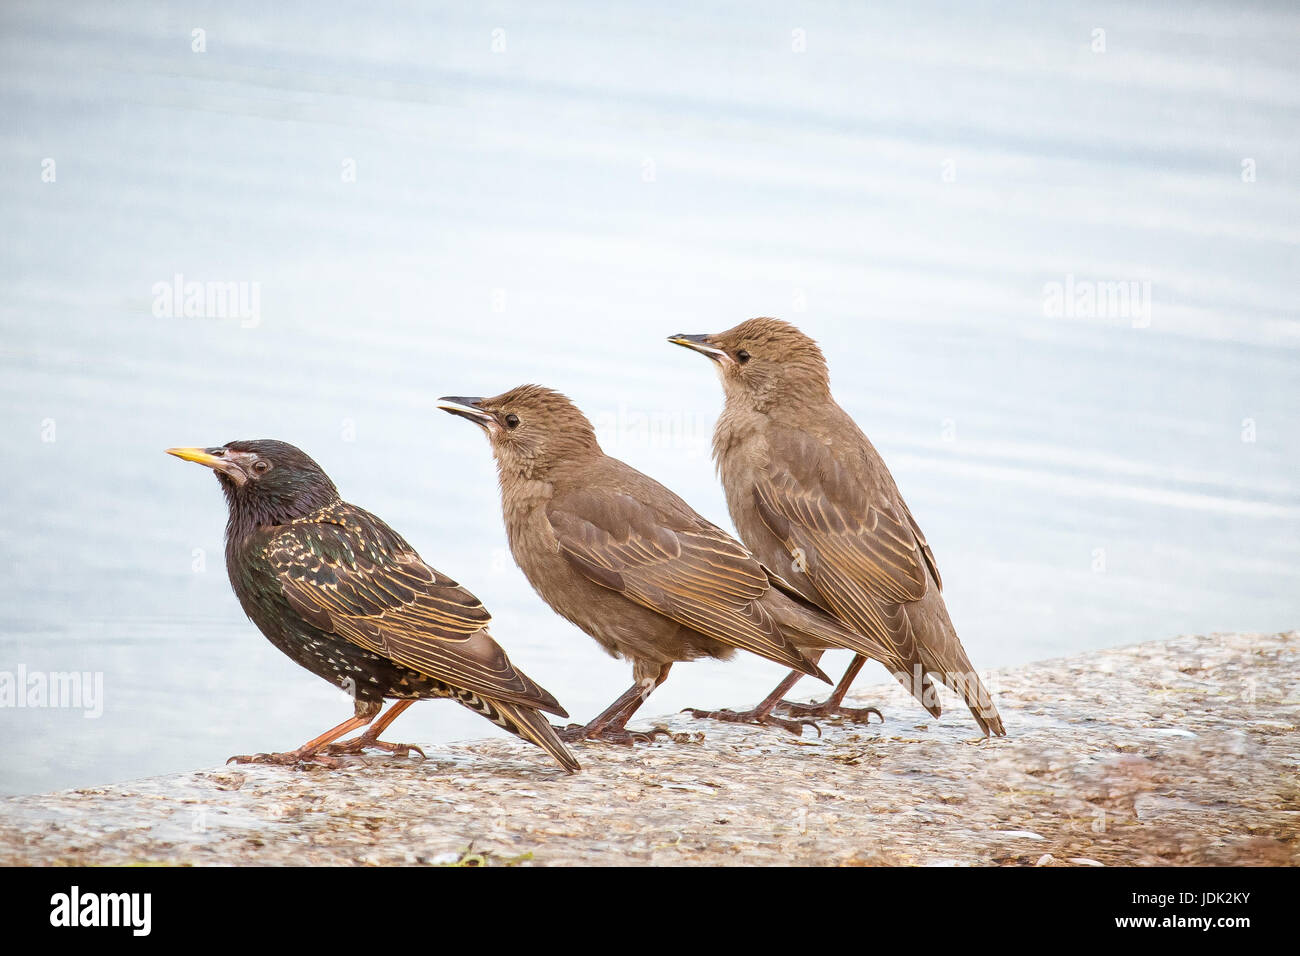 Diese drei kleinen gefiederten Freunde waren Zusammenkleben beim Warten auf den Regen an der runden Teich im Park Kensington Gardens zu starten. Stockfoto